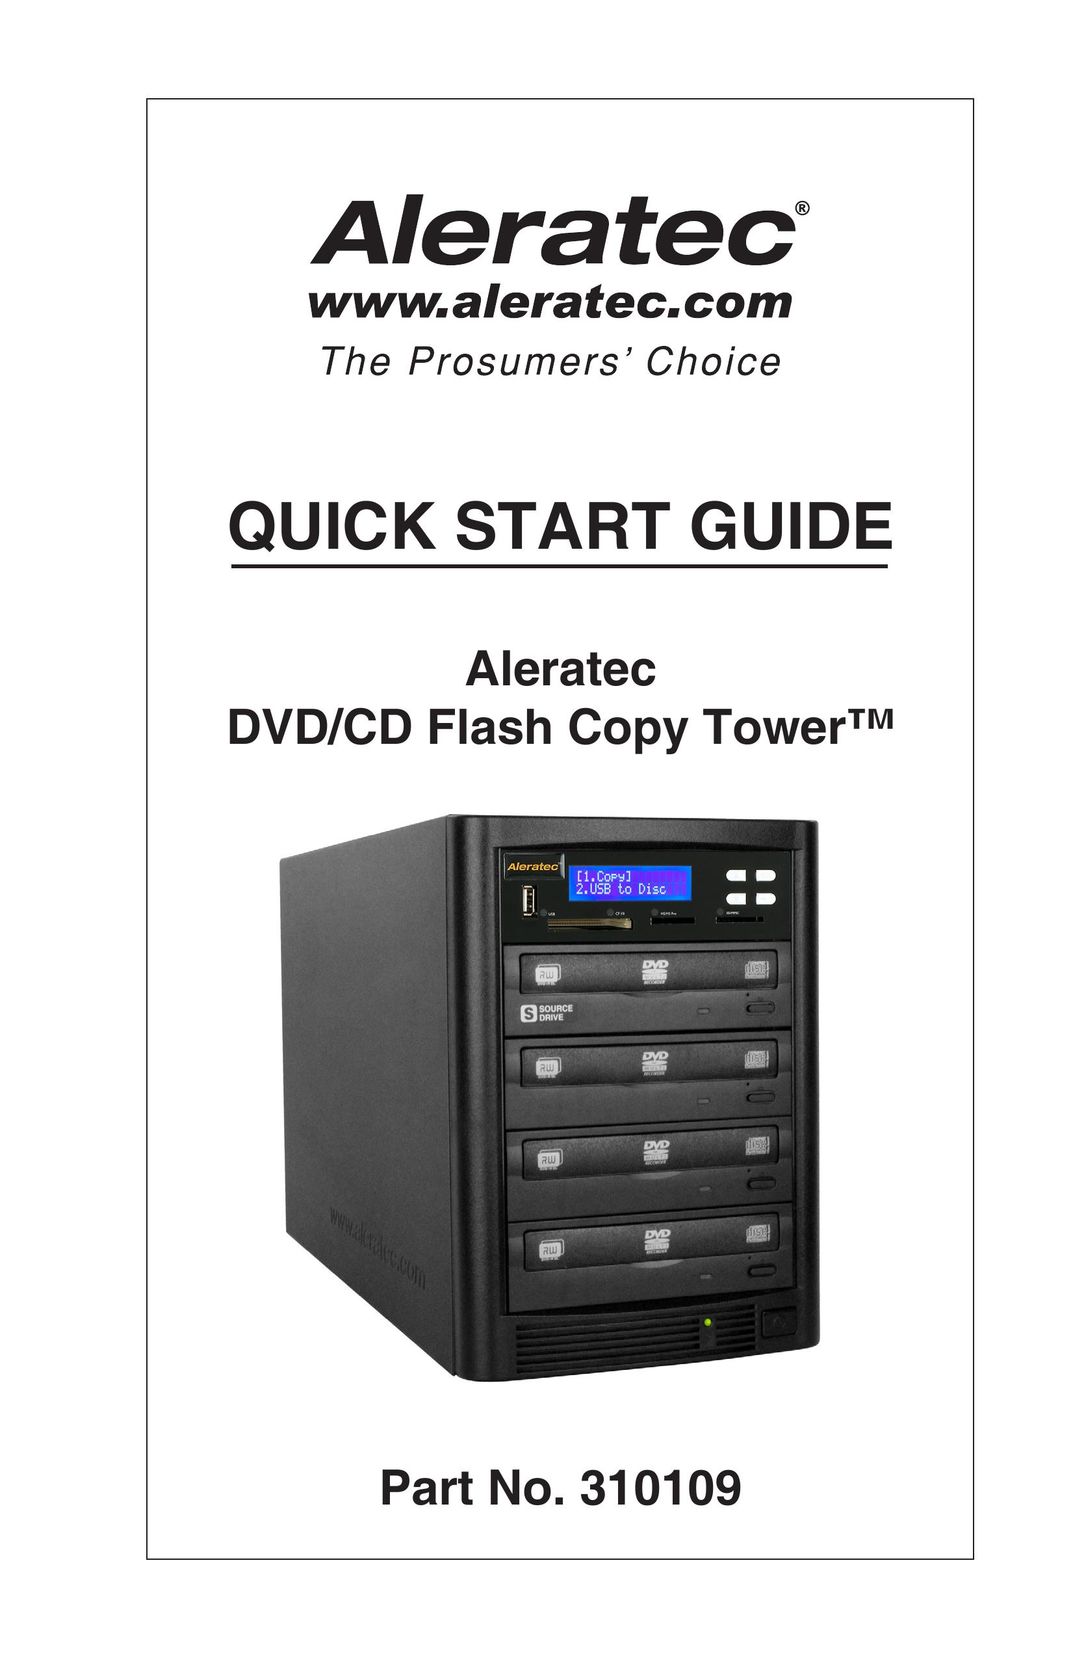 Aleratec 310109 Fax Machine User Manual